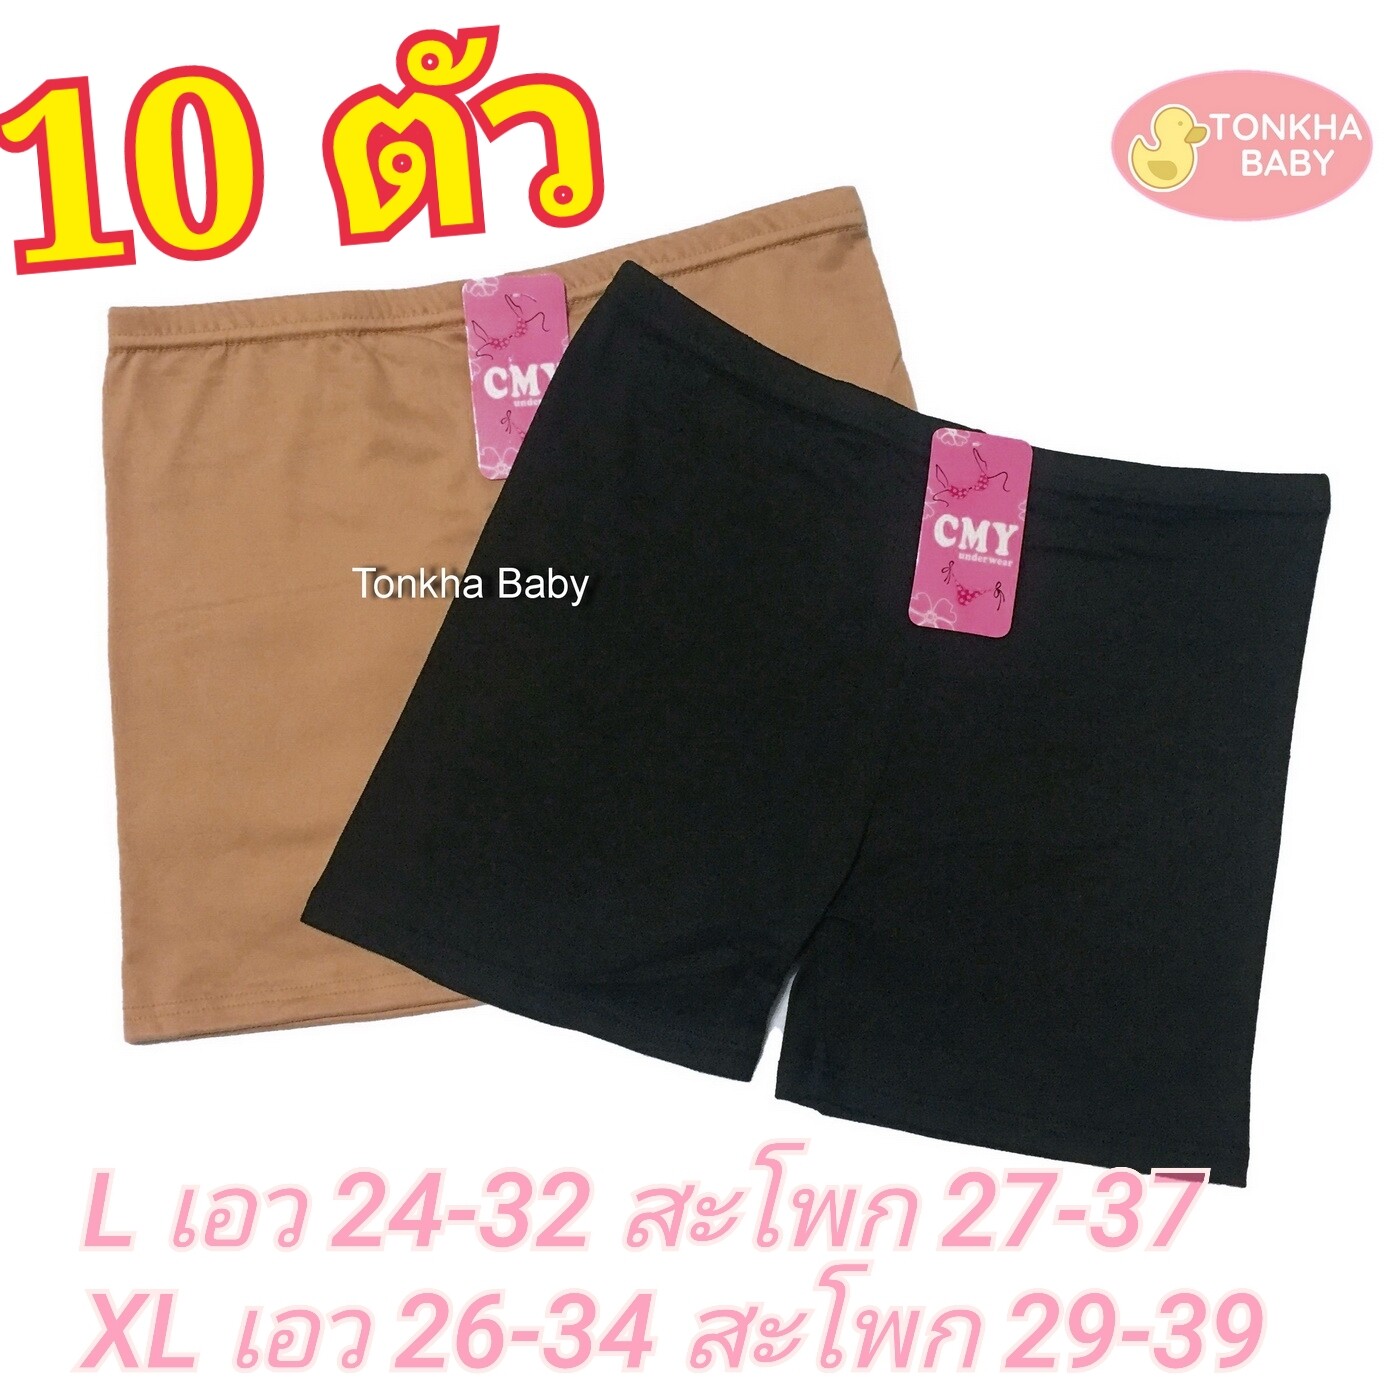 กางเกงซับใน สีดำ สีเนื้อ ผ้ายืดใส่สบาย มี 2 Size 10 ตัว กางเกงใน กางเกงในแบบมีขา กางเกงสเตย์ ผู้หญิง กางเกงกันโป๊ กางเกงซับ สีพื้น